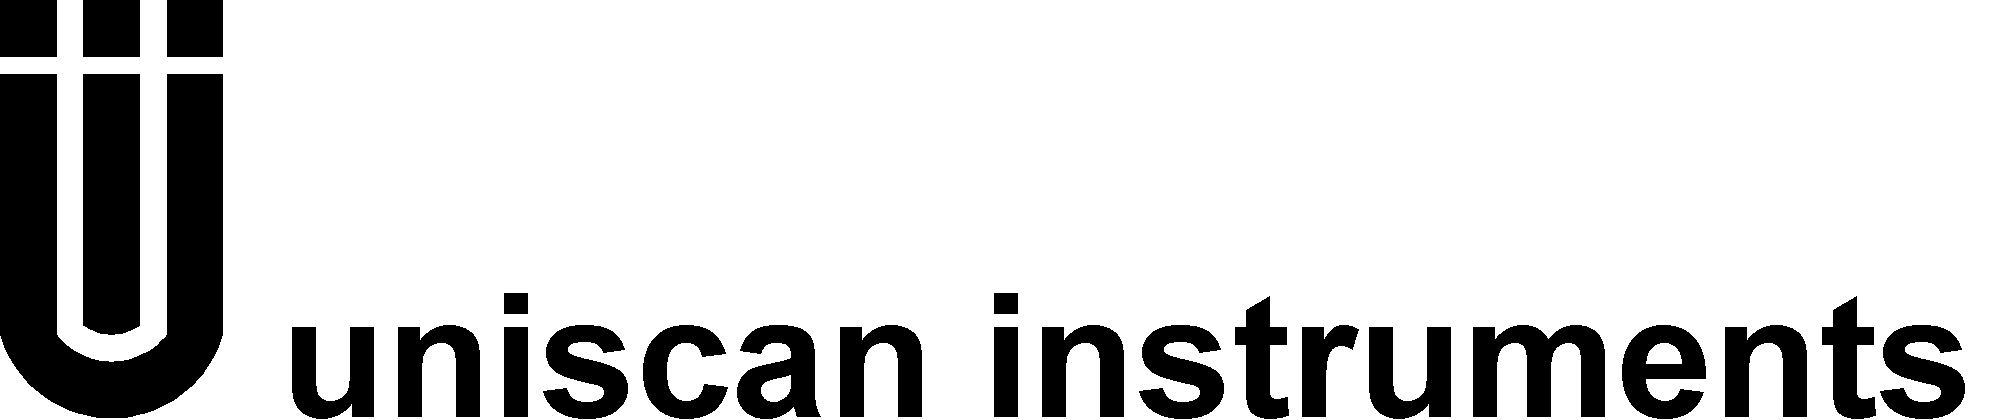 Uniscan logo